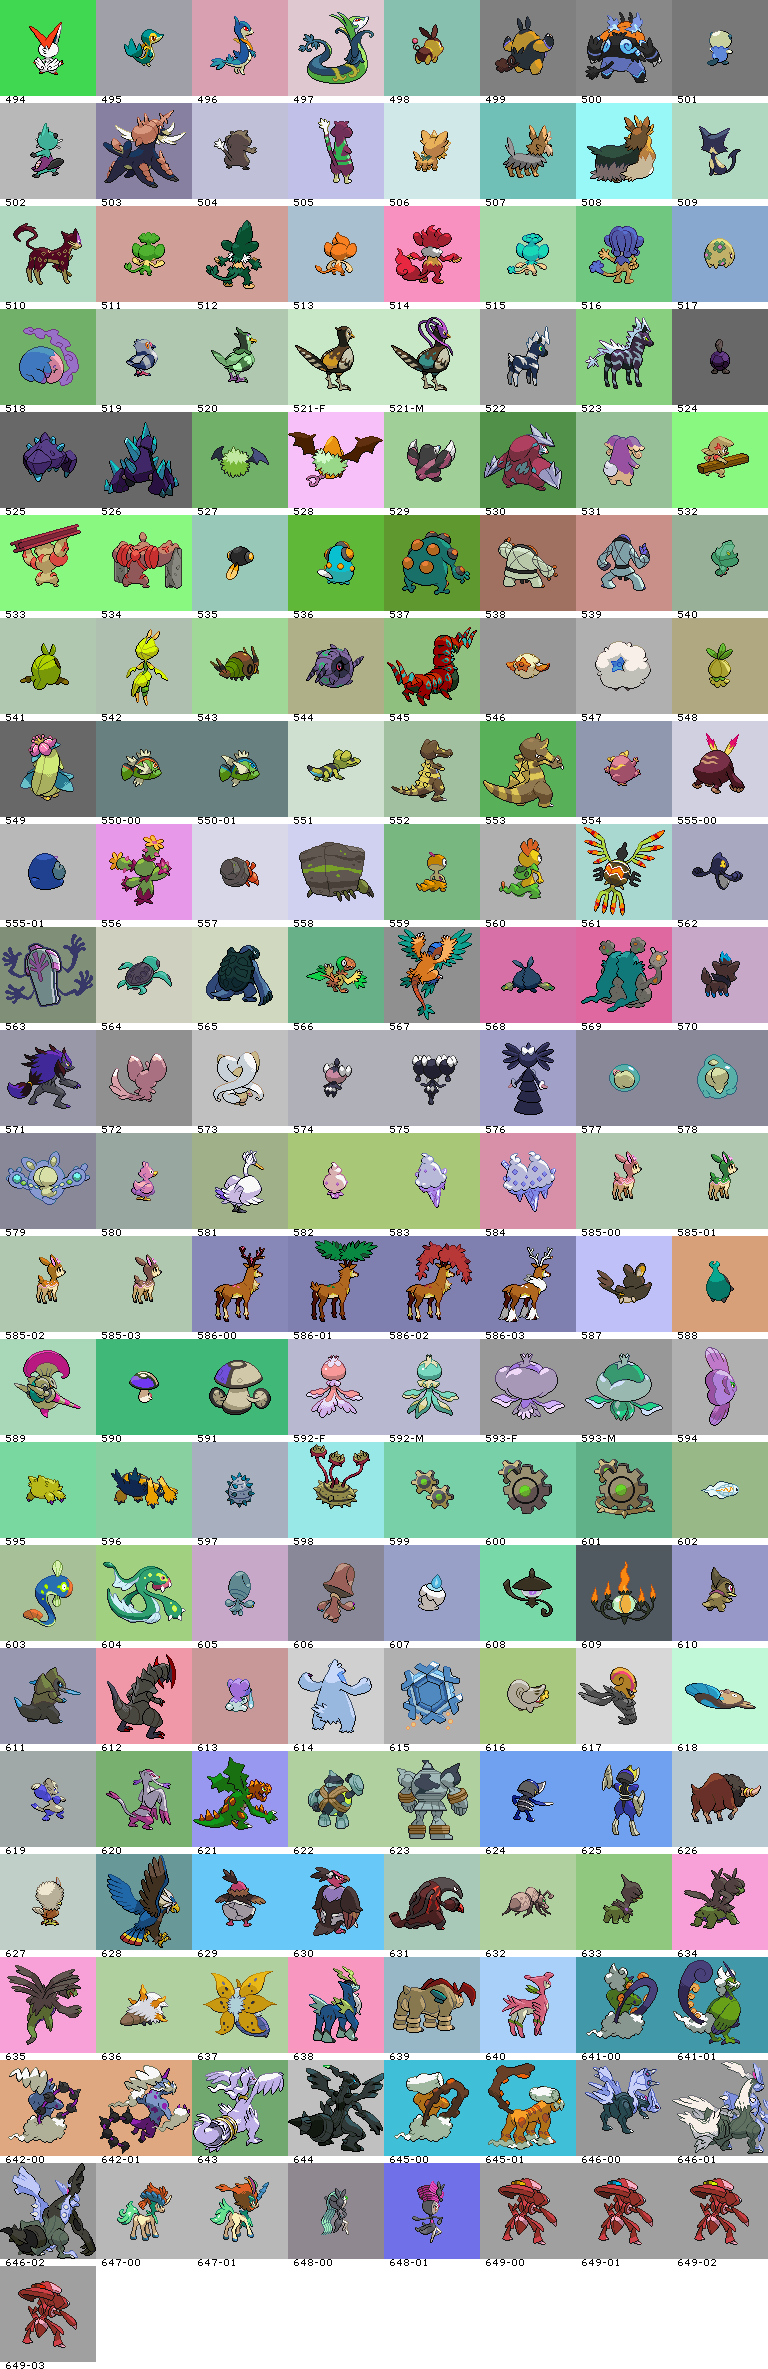 Pokémon (5th Generation, Shiny, Back)